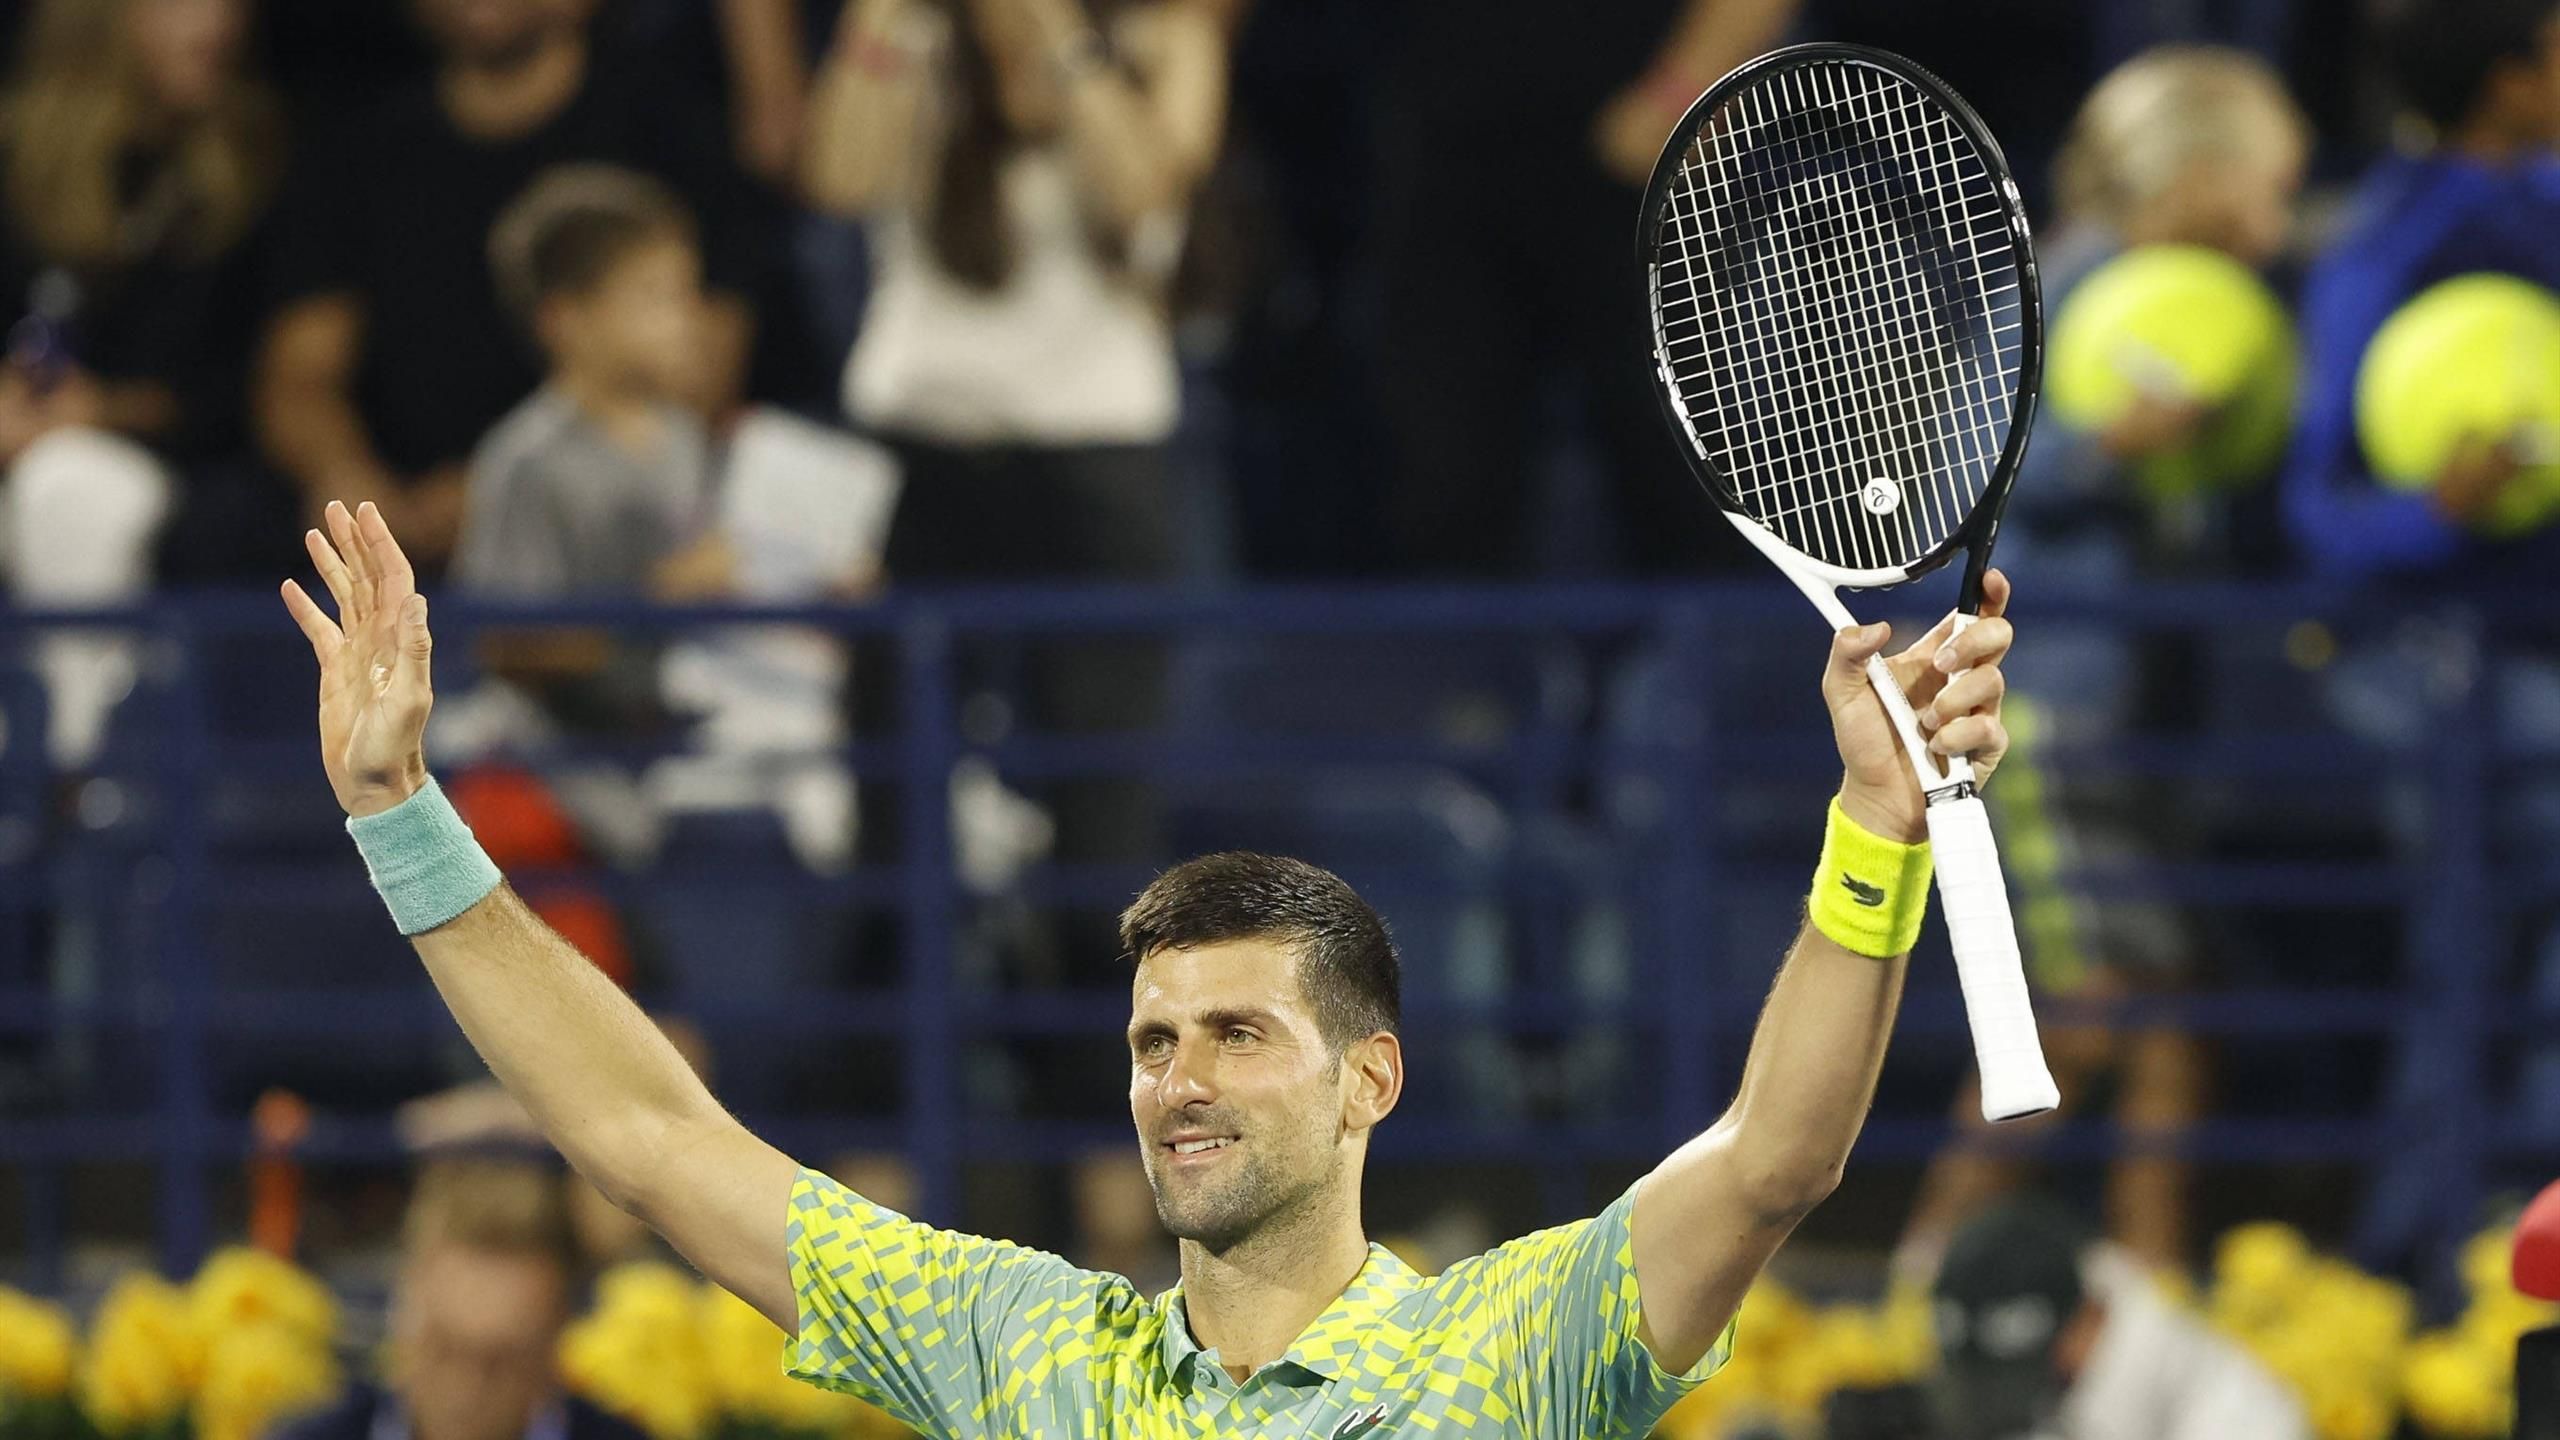 Djokovic vence polonês e vai à semifinal do ATP 500 de Dubai, tênis